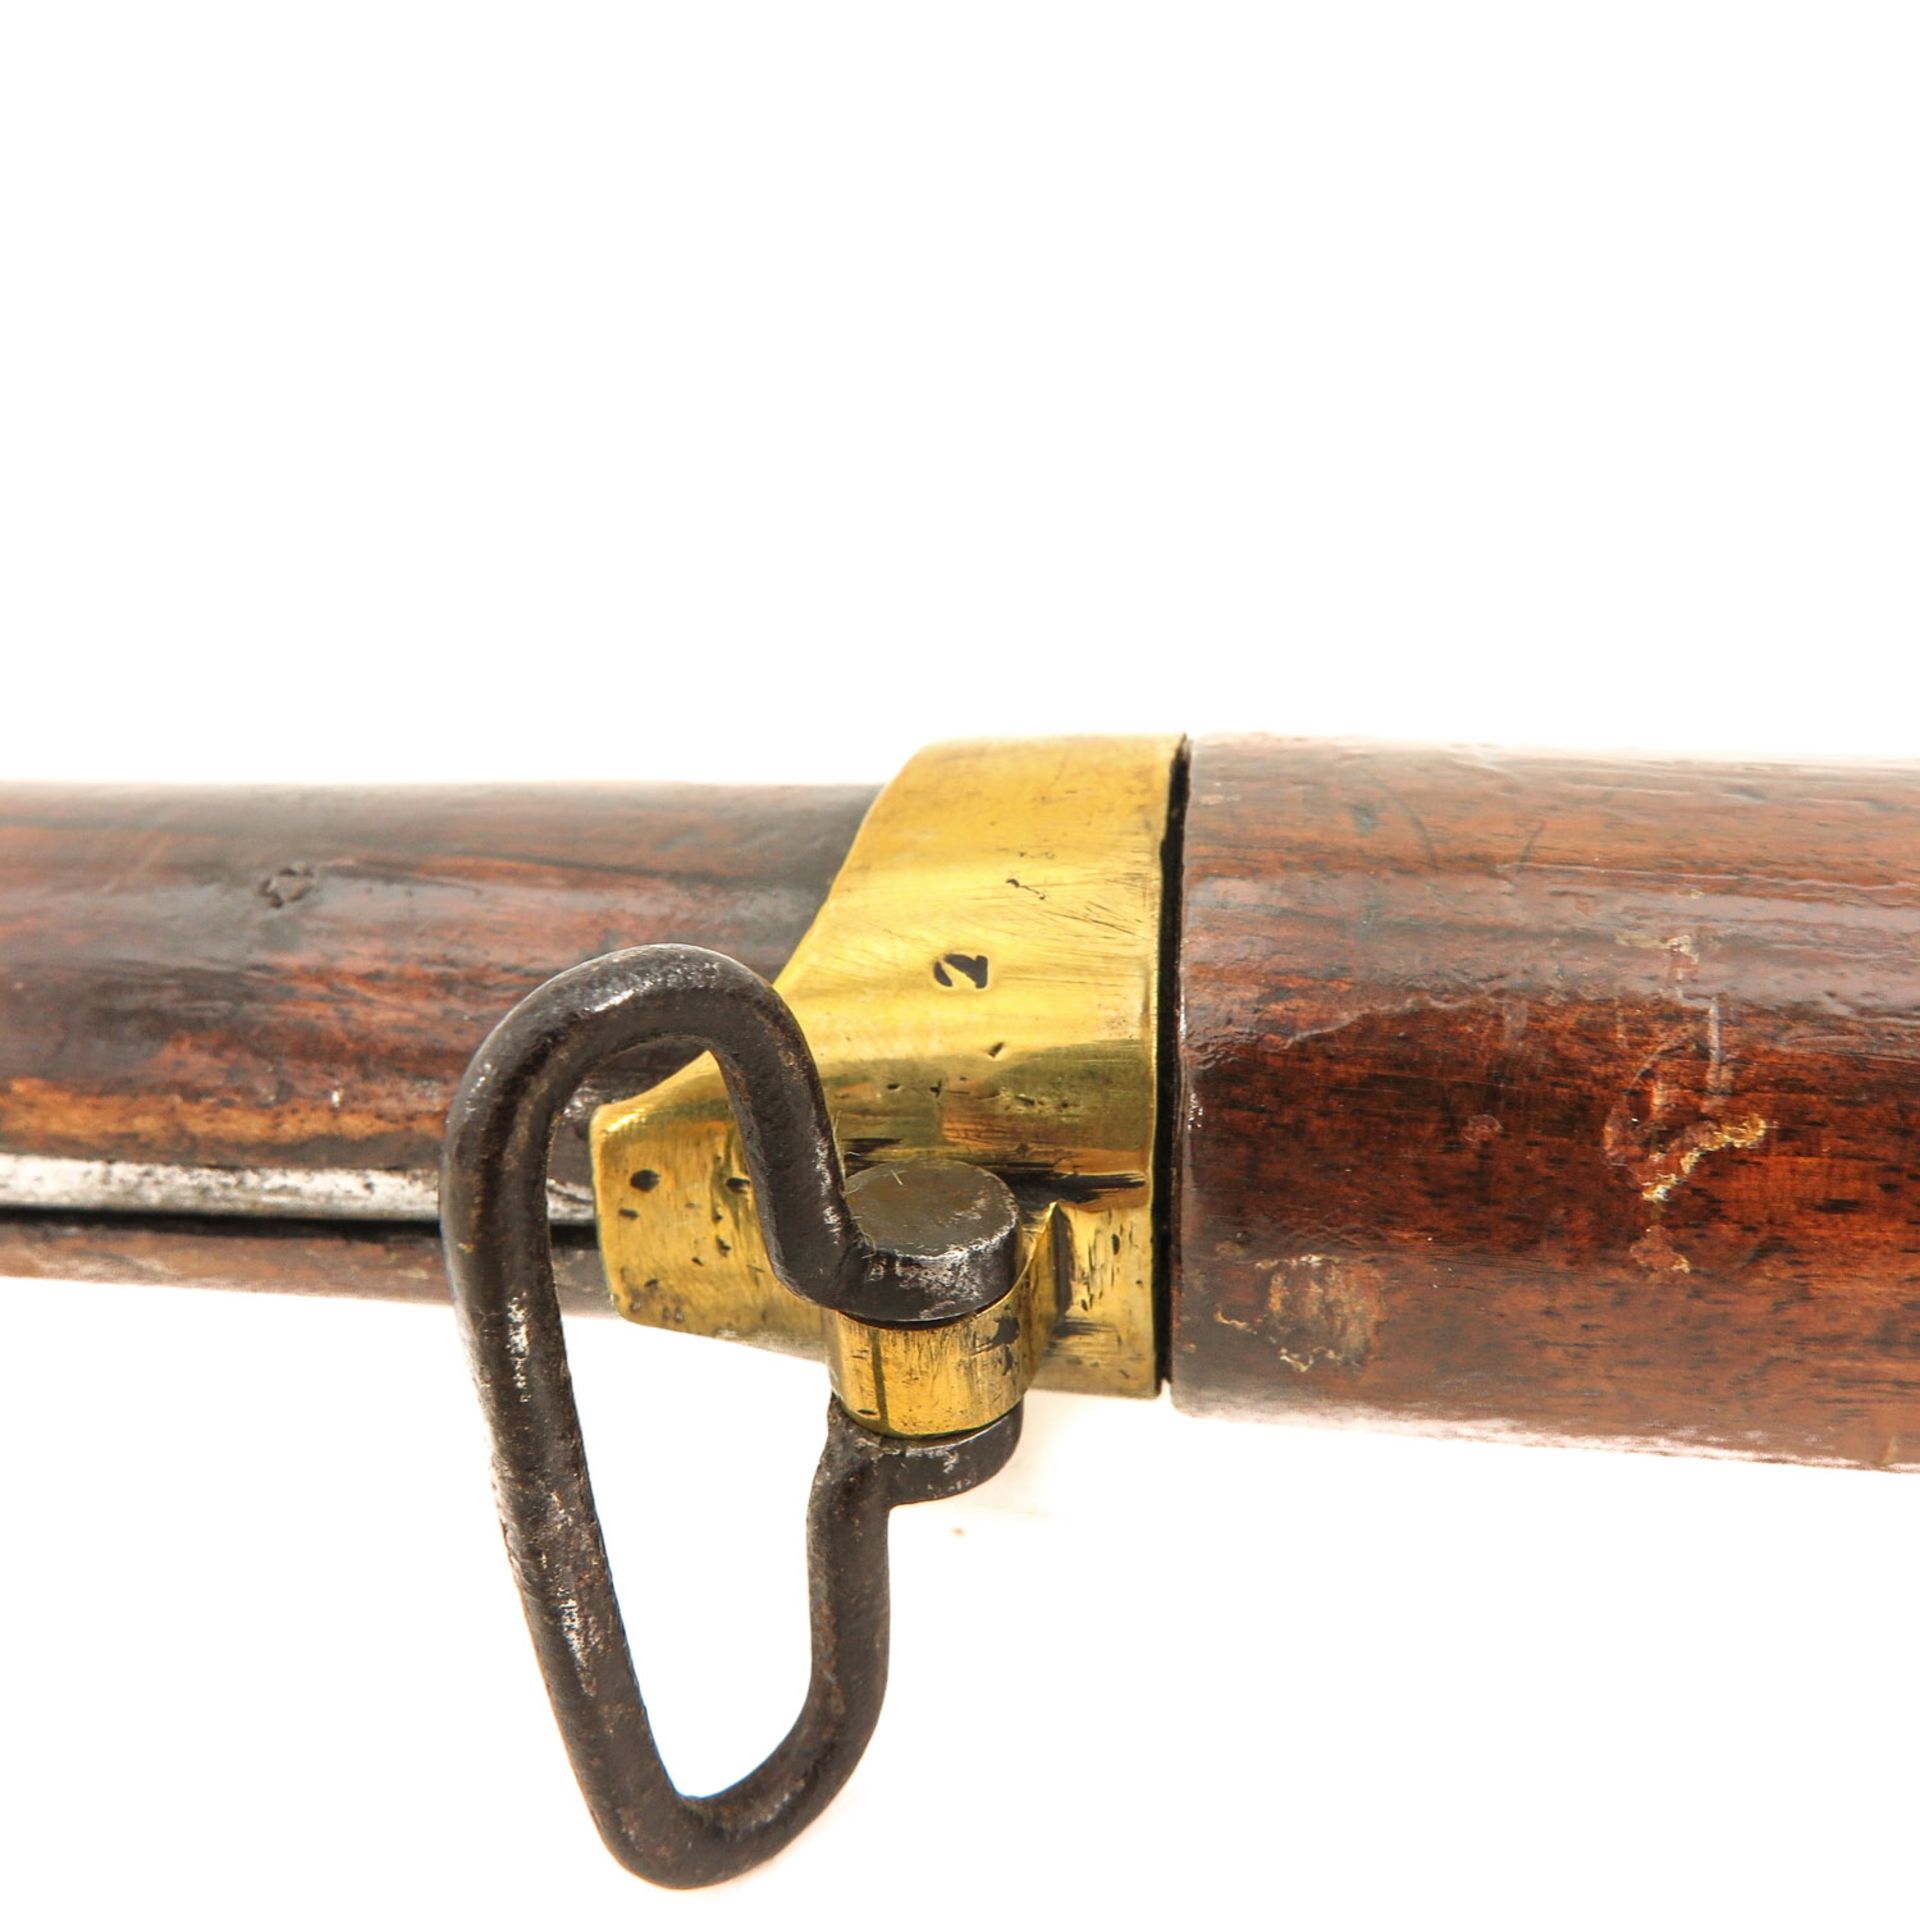 An Antique Belgium Carbine - Image 4 of 8